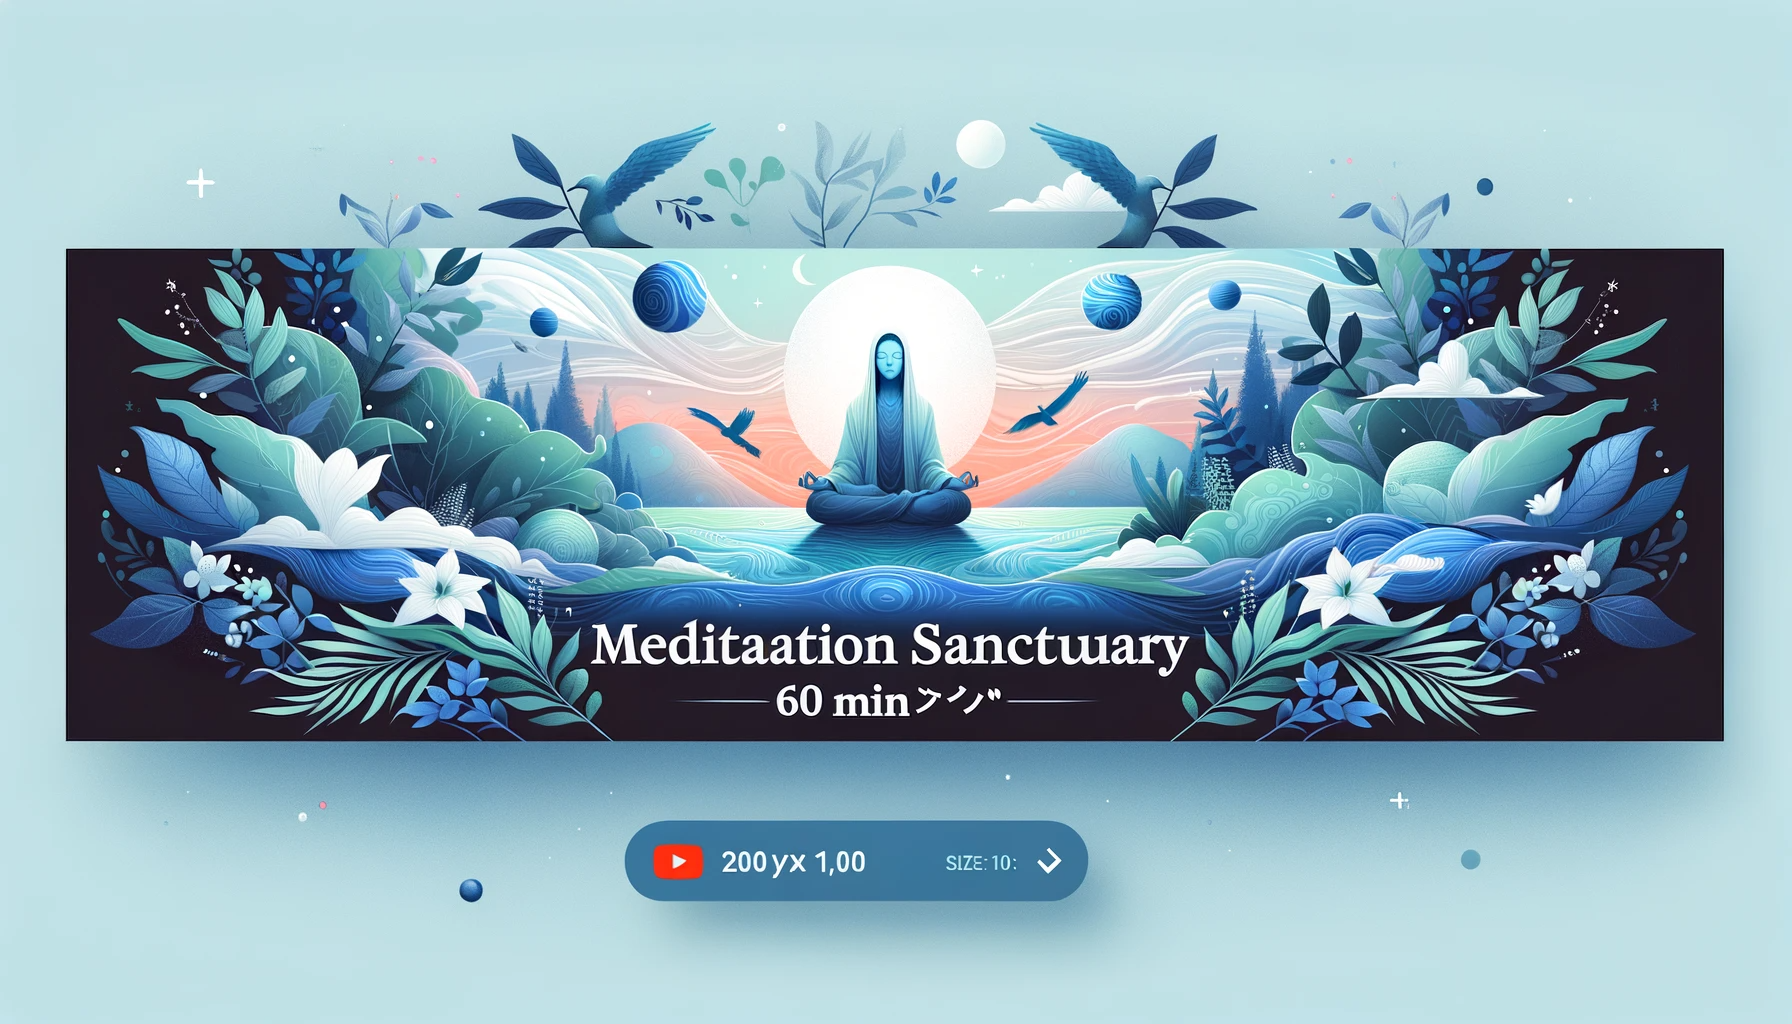 Meditation Sanctuary 60 min メディテーション６０分